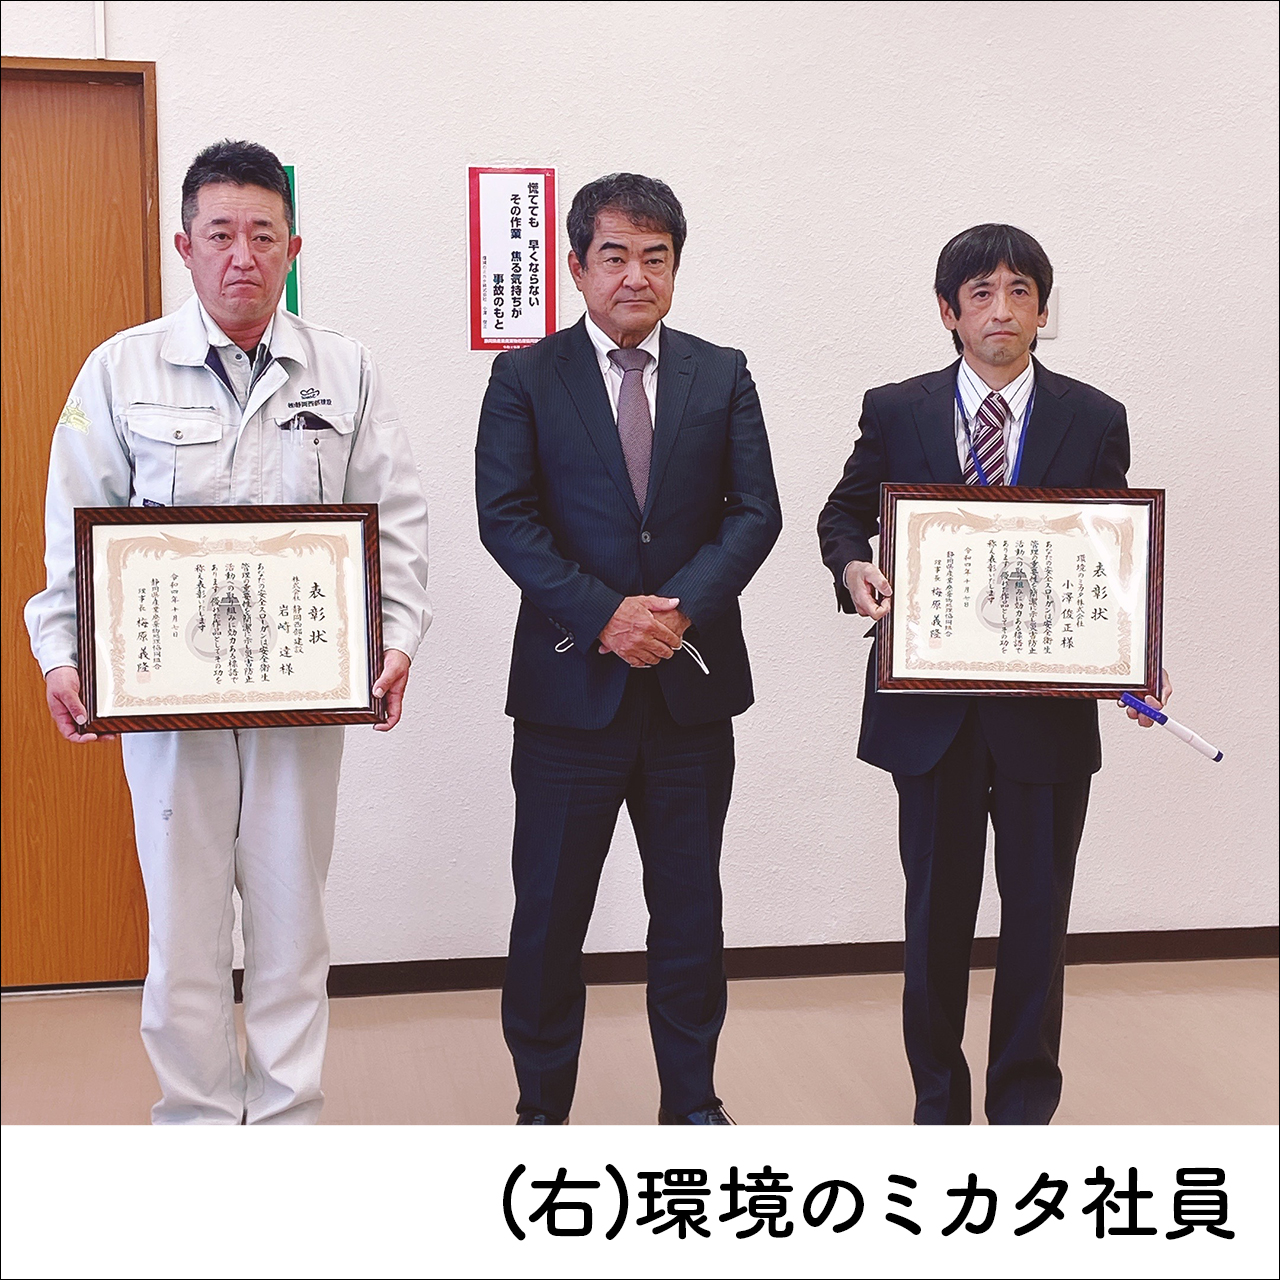 静岡県産業廃棄物処理協同組合の安全標語に採用されました